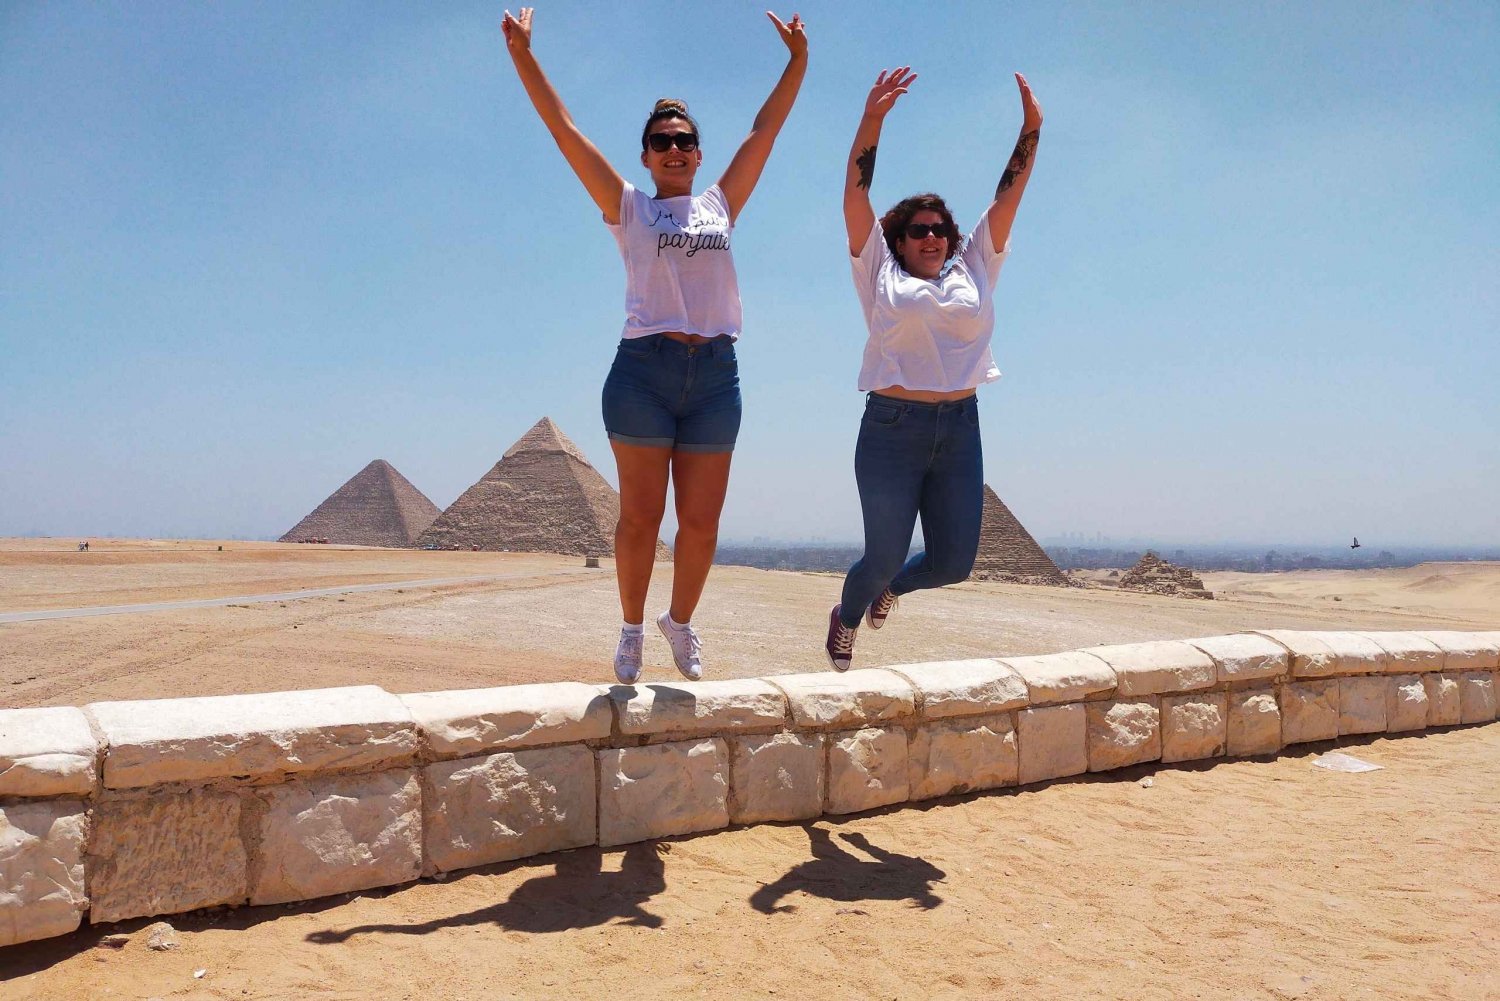 Utflykt till pyramiderna i Giza, trappstegspyramider och minnesmärken